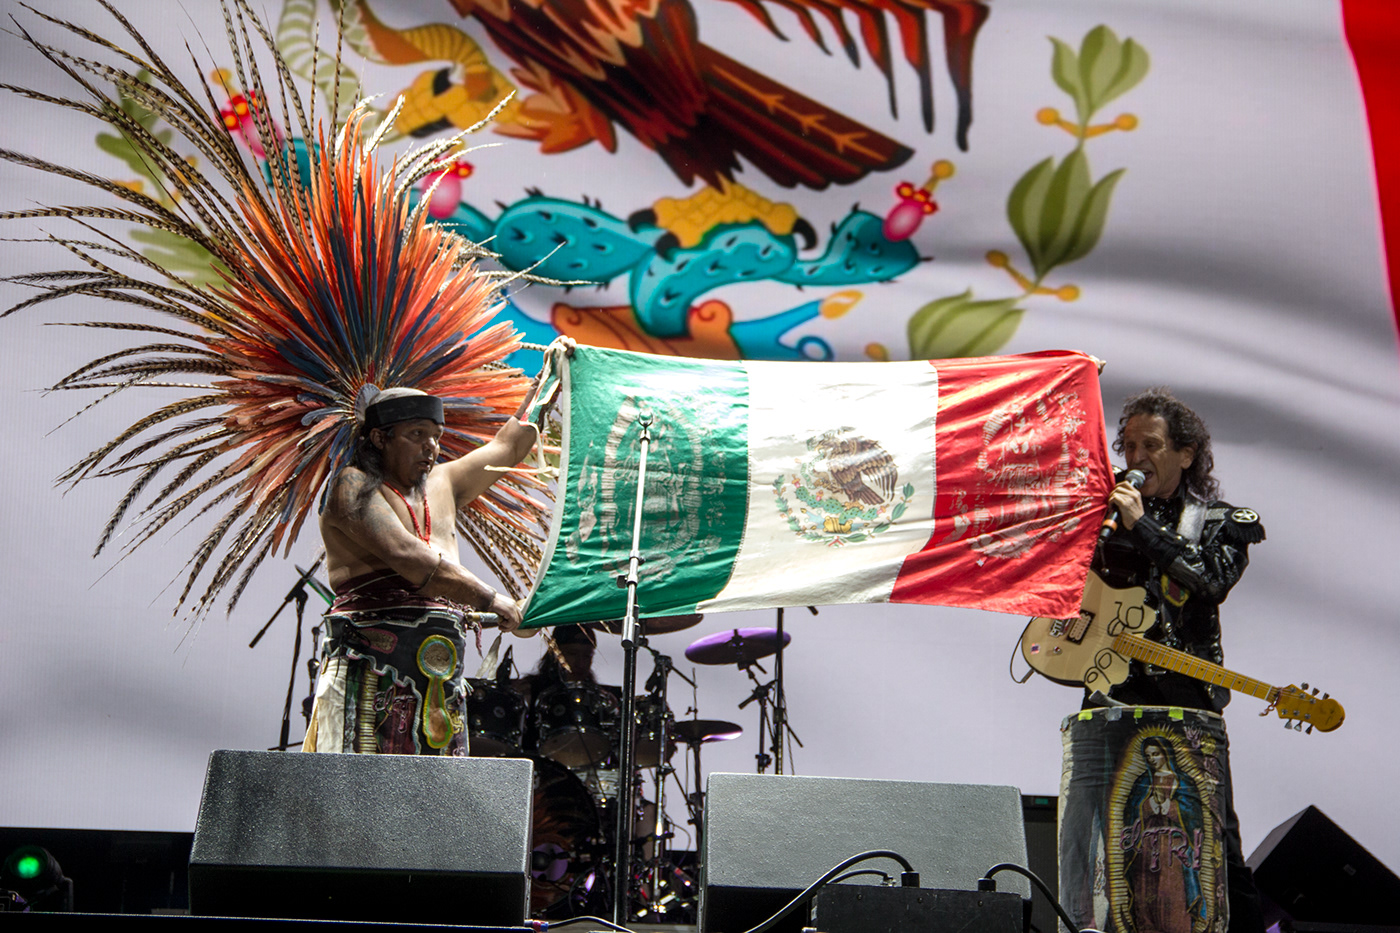 el Tri vive latino alex lora Vive Latino 2019 mexico fotografo de conciertos concierto CDMX Ciudad de México